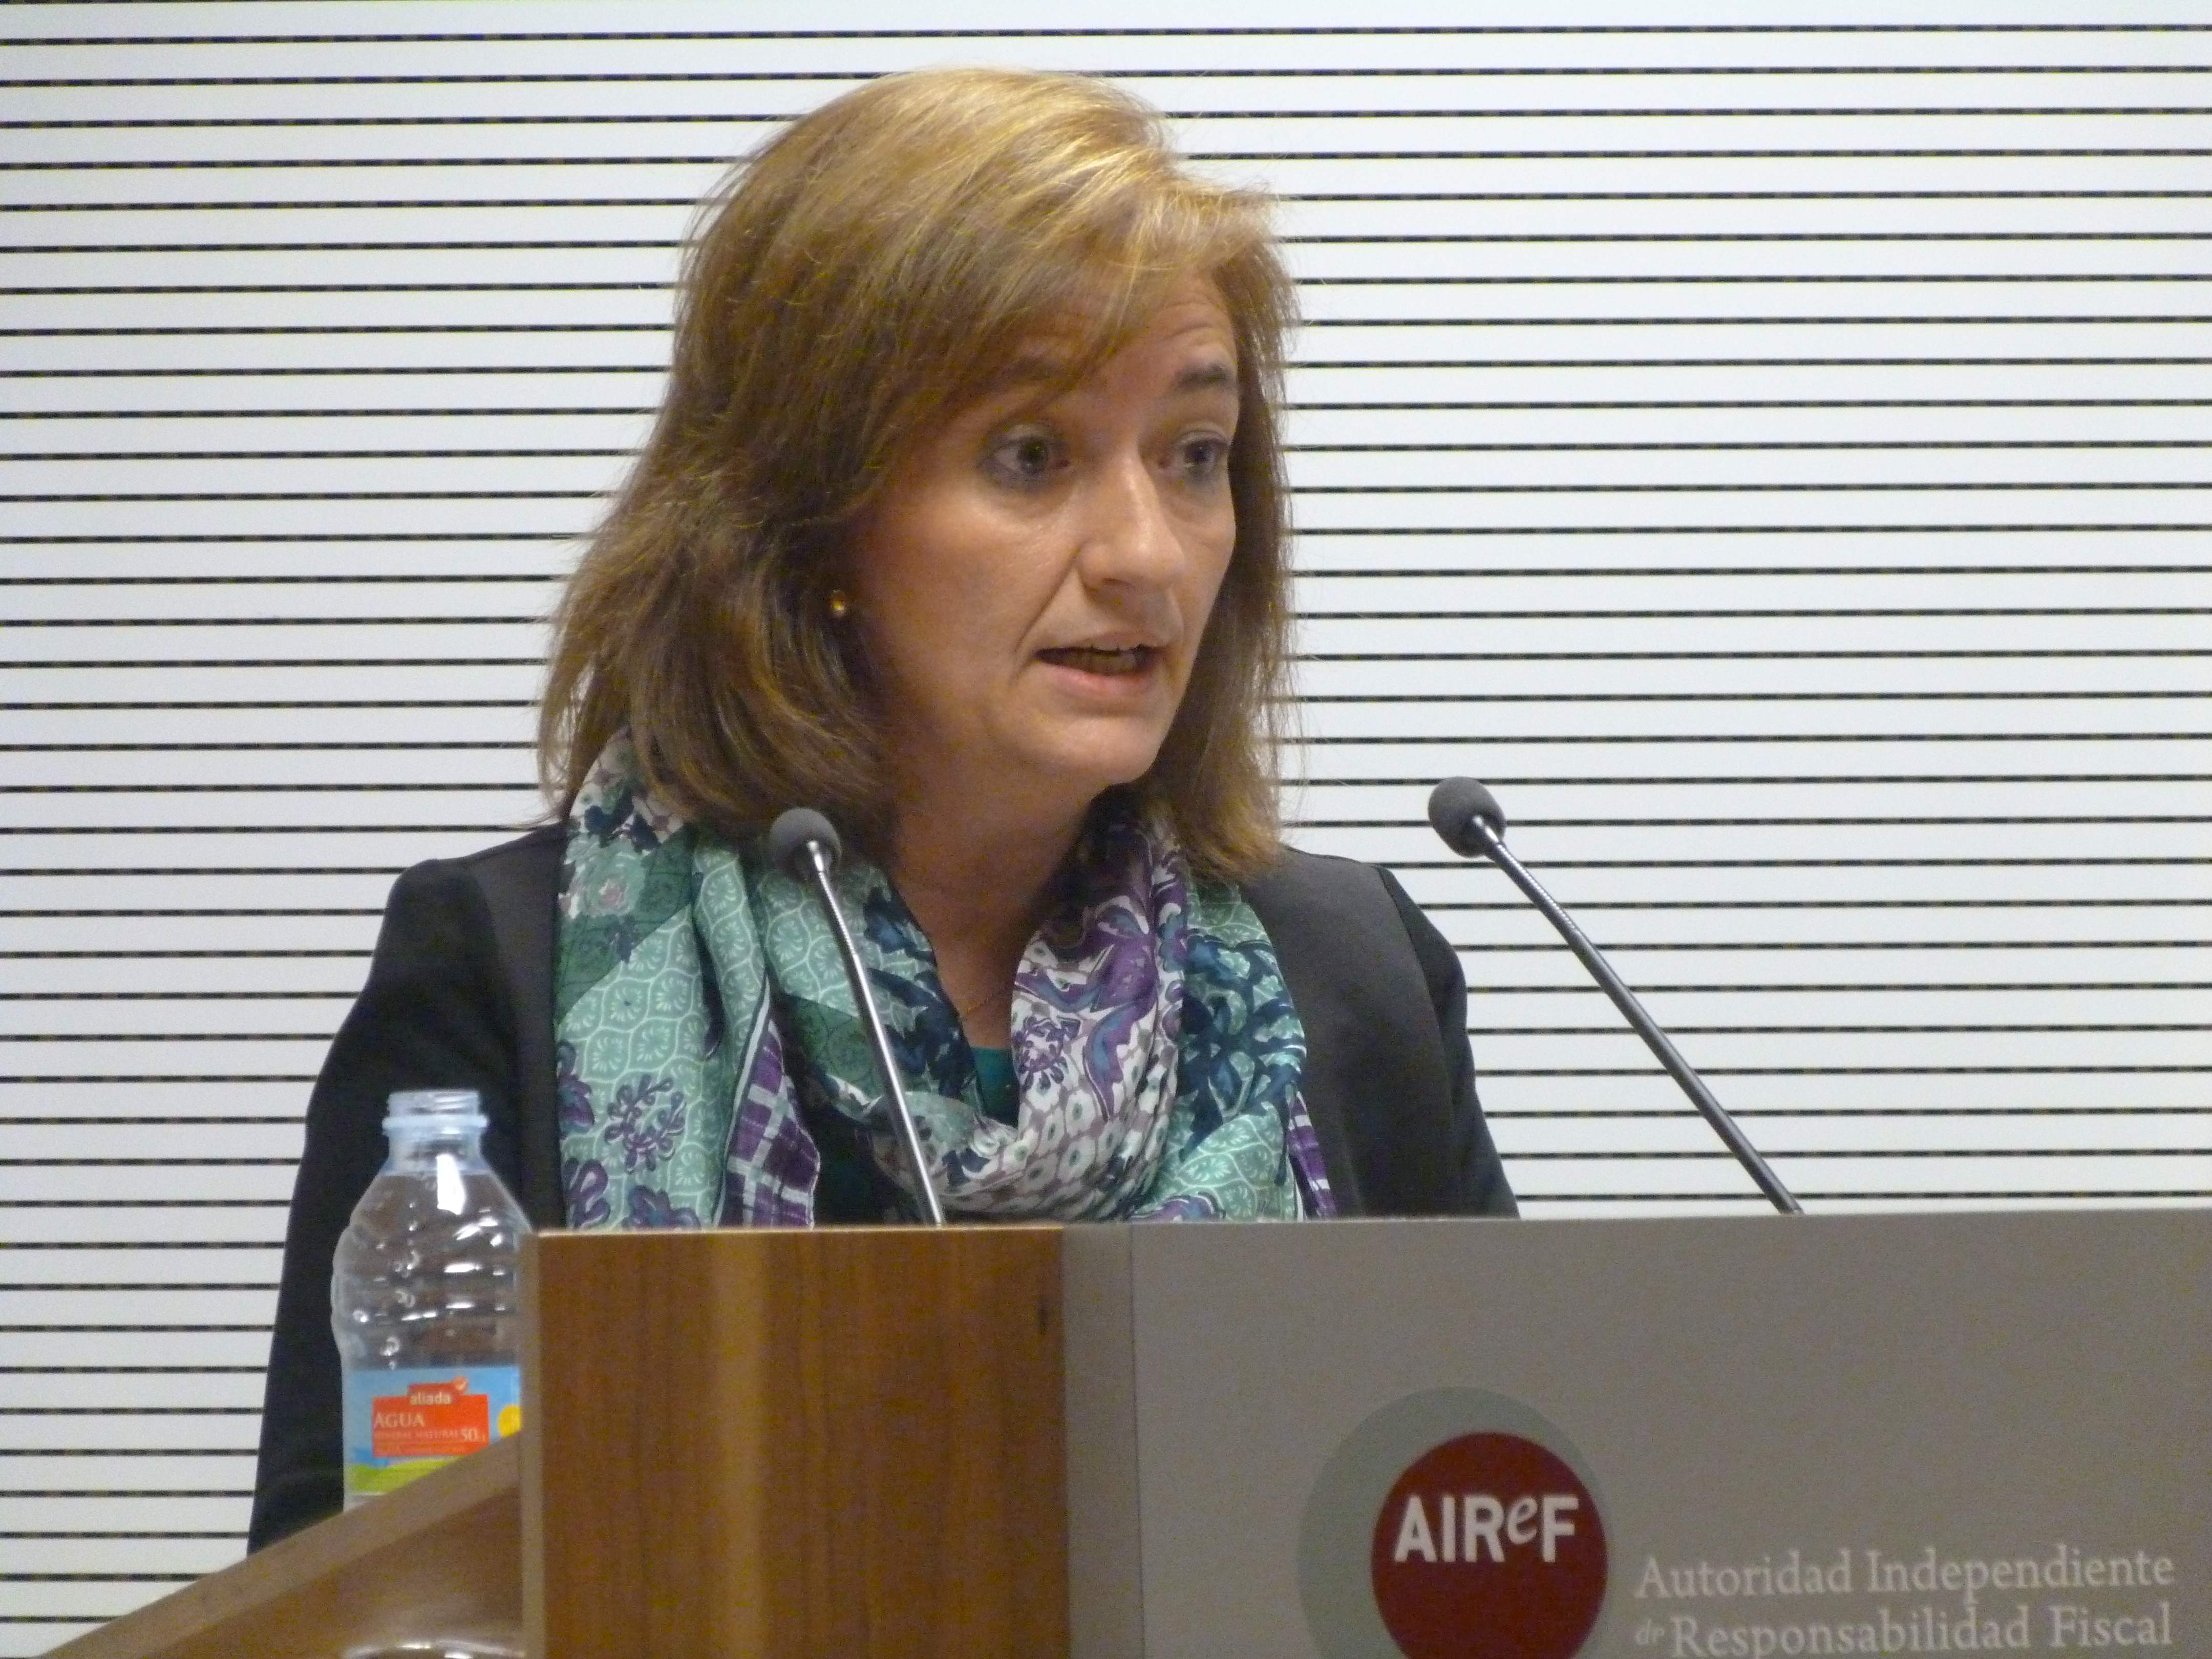 La Airef considera "difícil de asumir" un modelo de financiación singular para Catalunya